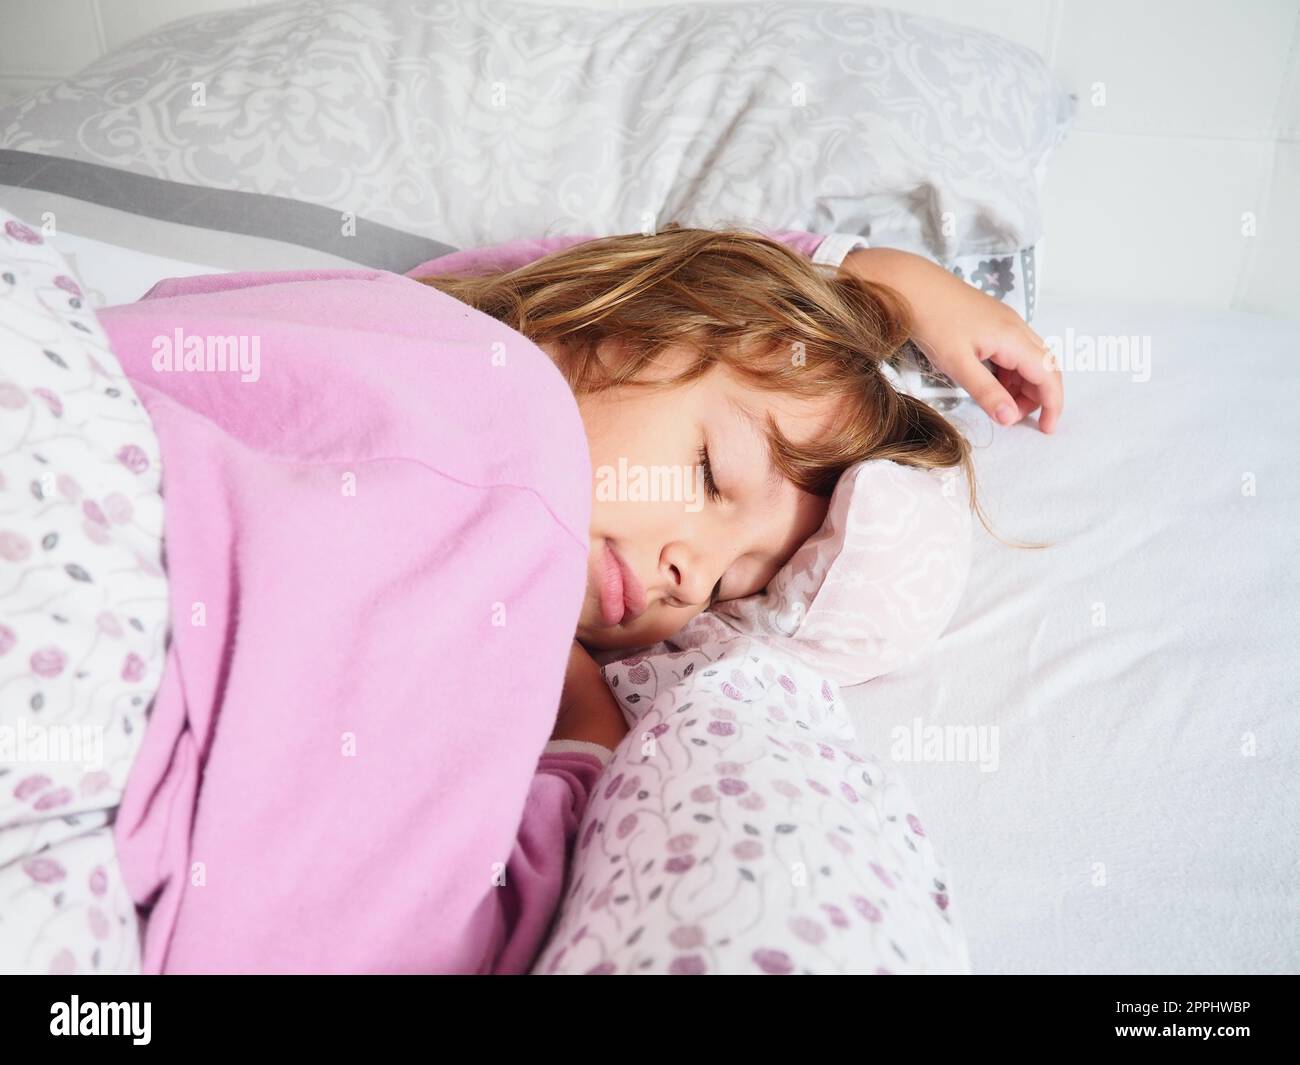 Ein hübsches, 8 Jahre altes, weißes Mädchen mit blonden Haaren, gekleidet in pinkfarbenen Pyjamas, schläft auf einem Bett mit einer flauschigen Decke, umarmt ein Kissen. Sanftes Licht der Morgensonne strömt durch das Fenster. Stockfoto